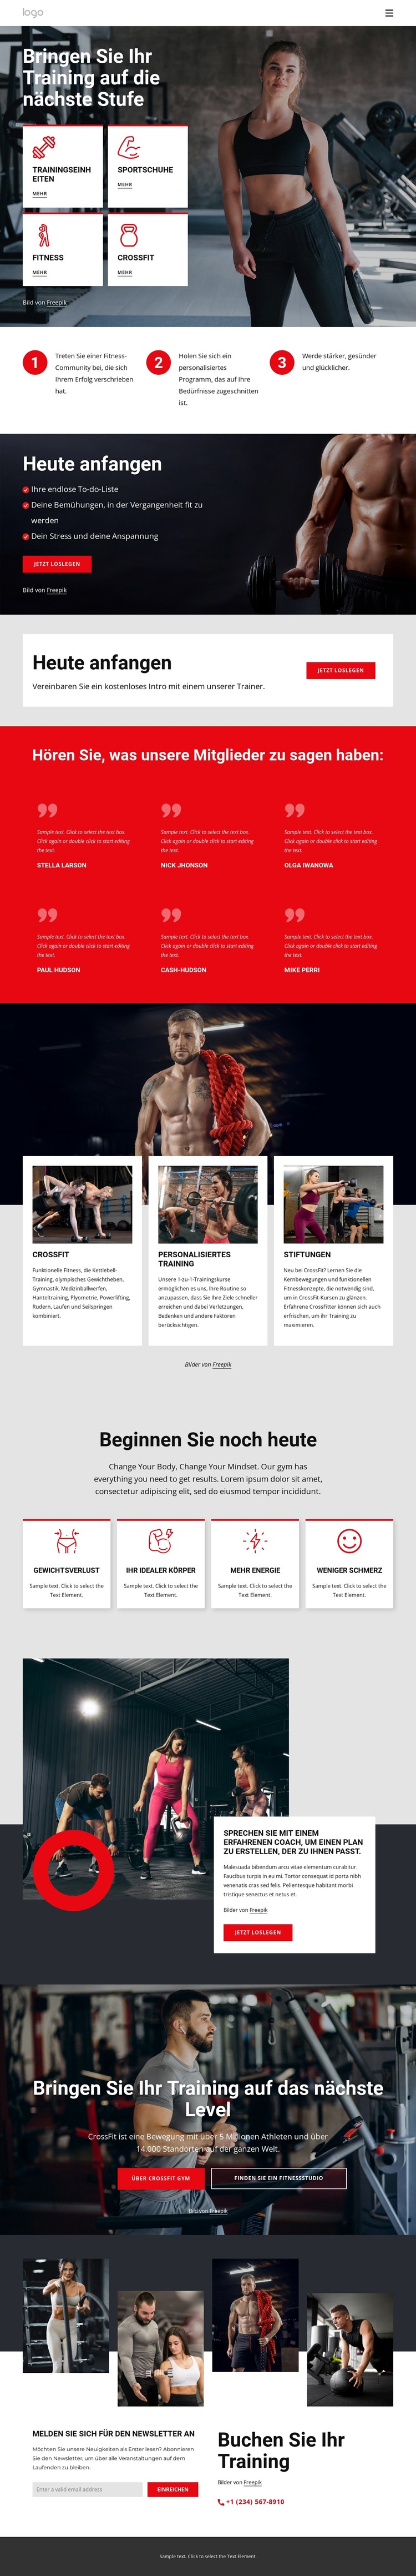 Crossfit-Trainingsgemeinschaft Website-Vorlage